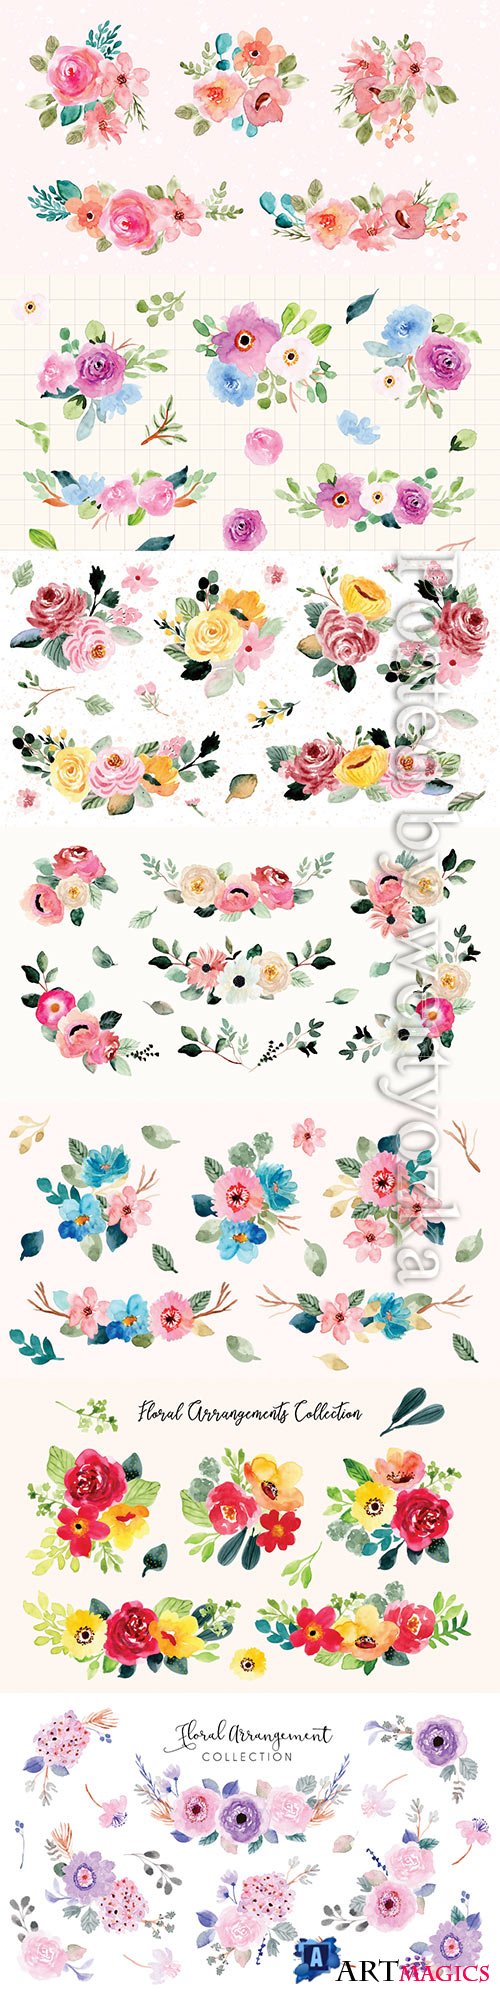 Pretty flower arrangement watercolor collection